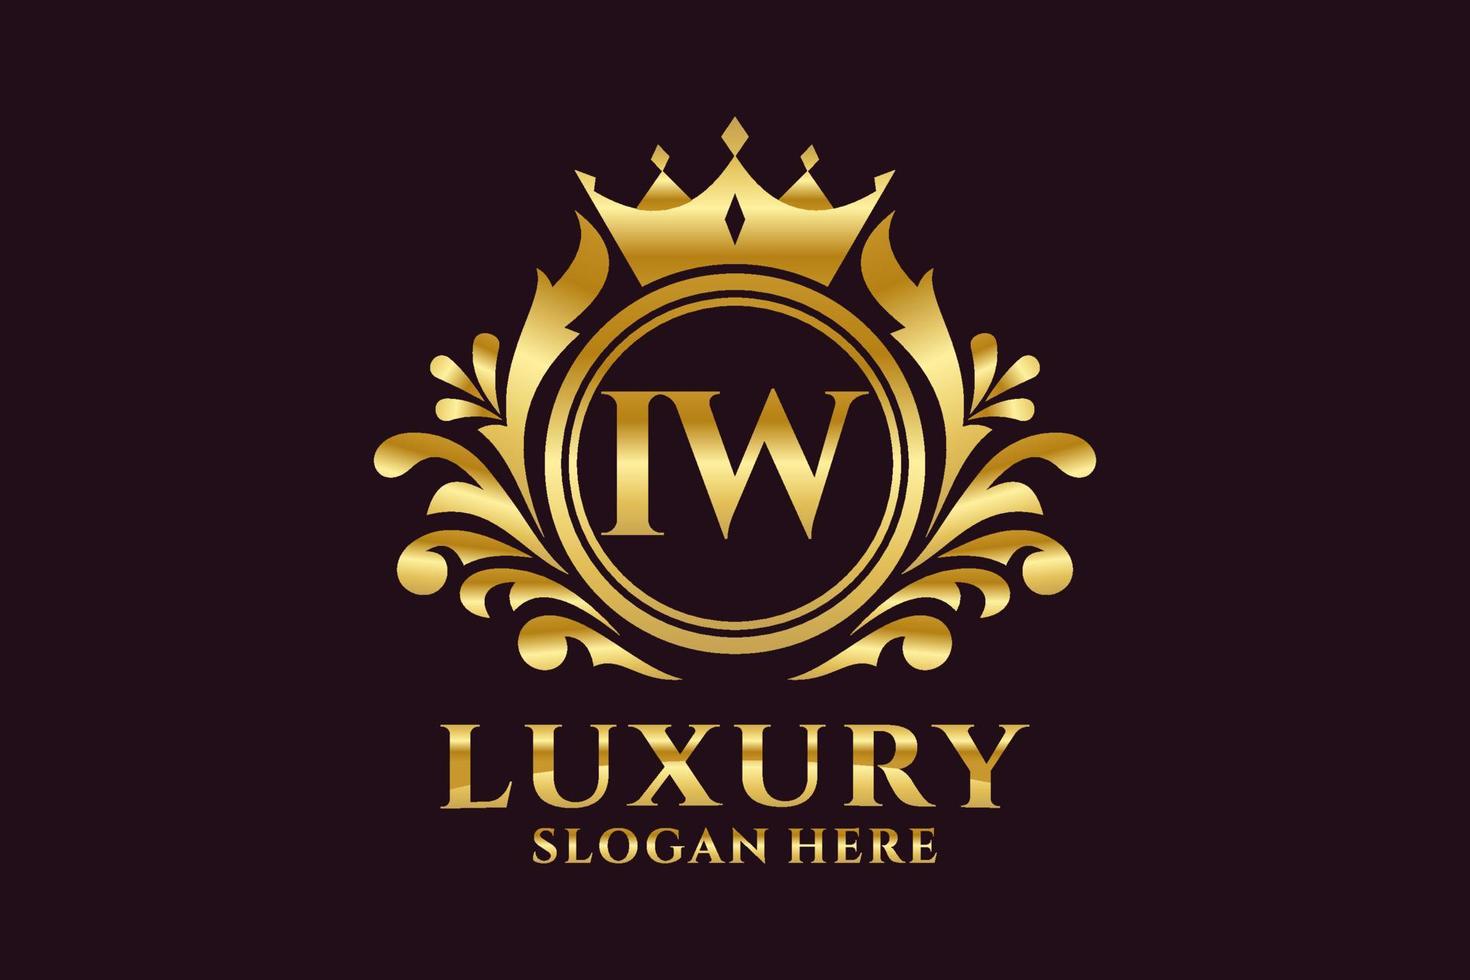 modèle initial de logo de luxe royal de lettre iw dans l'art vectoriel pour des projets de marque luxueux et d'autres illustrations vectorielles.